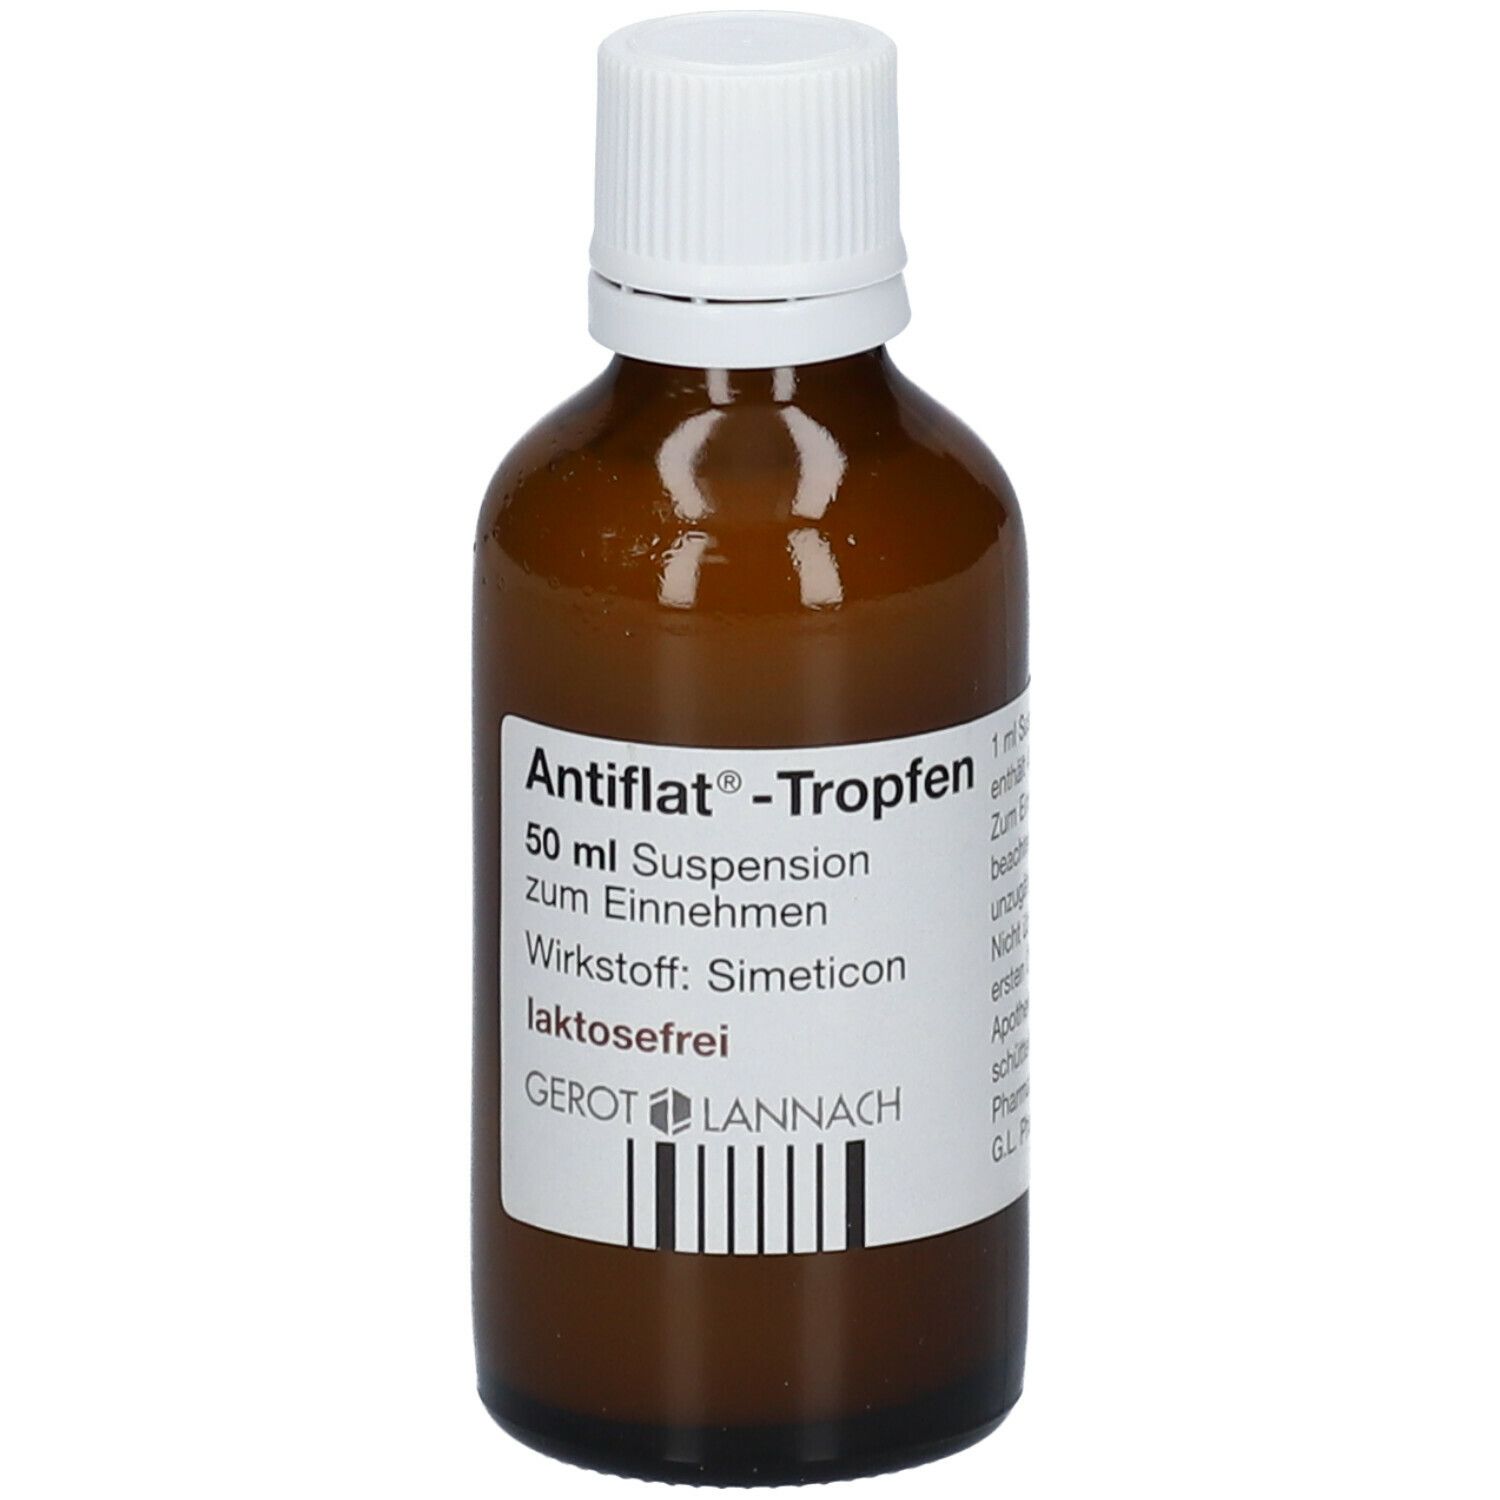 Antiflat® 50 ml - shop-apotheke.at